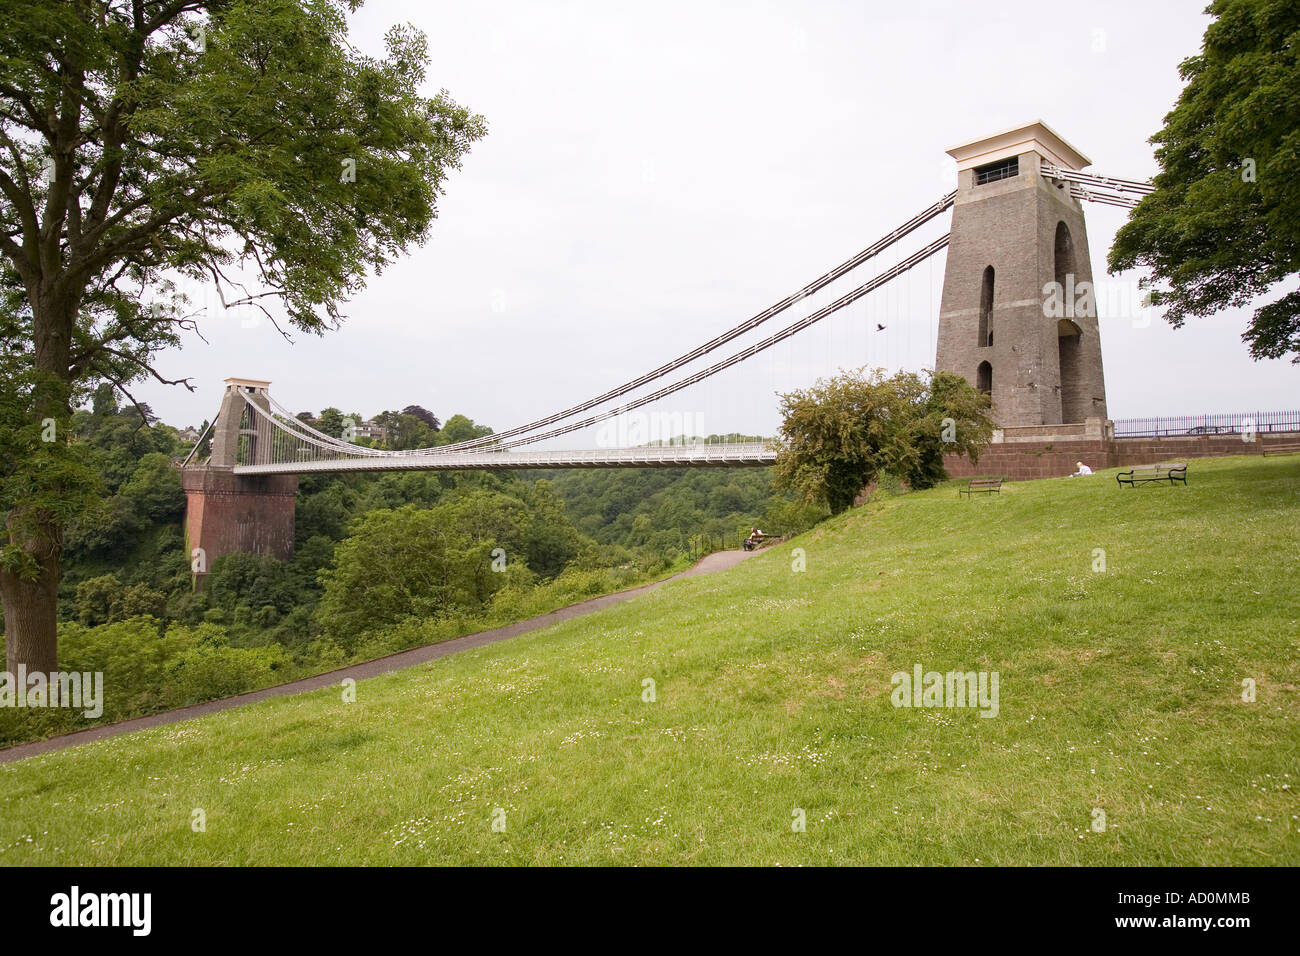 Angleterre Bristol Brunels Clifton Suspension Bridge sur l'Avon Gorge Banque D'Images